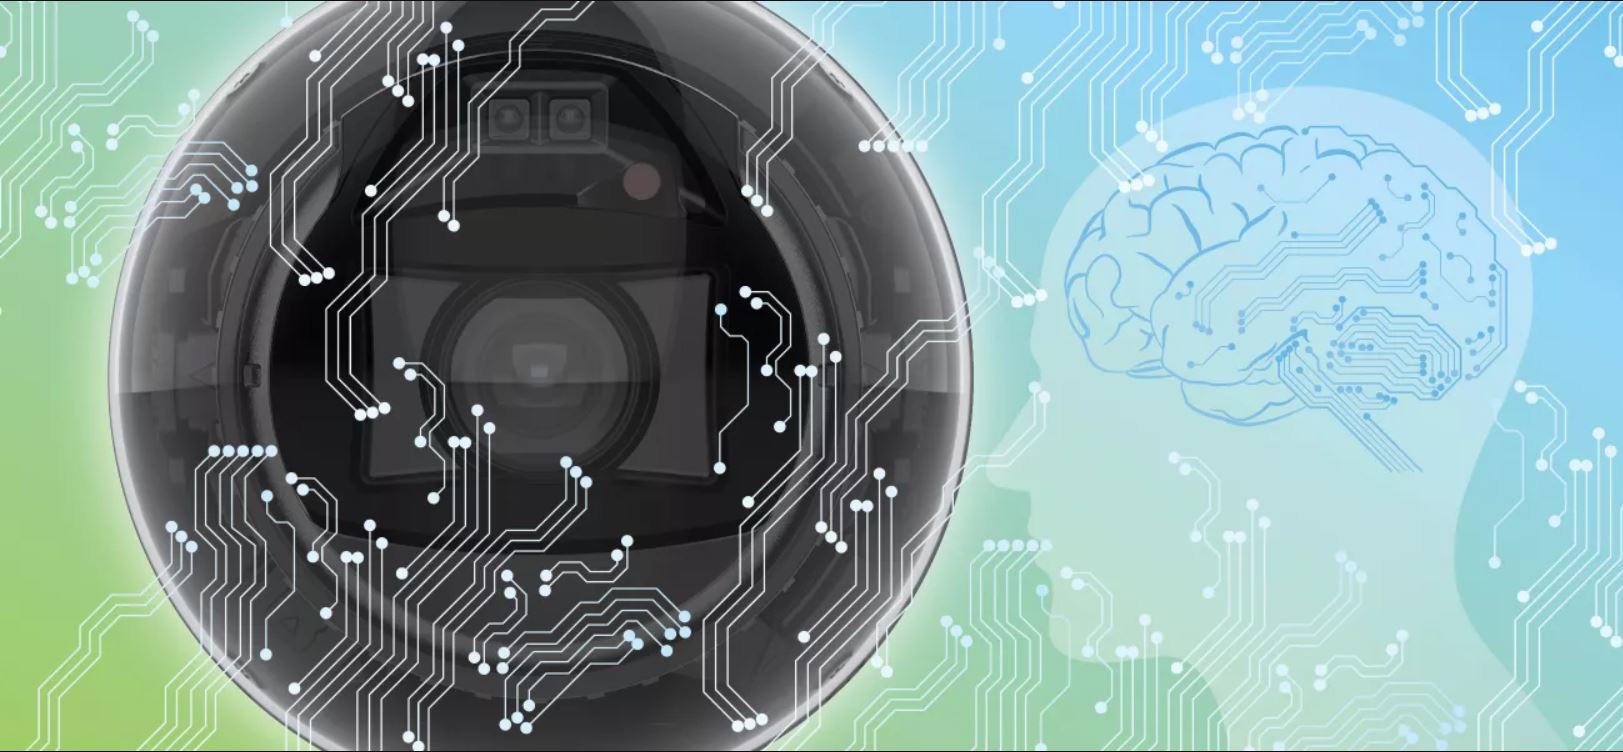 Axis Communications integrează inteligența artificială în produsele de securitate